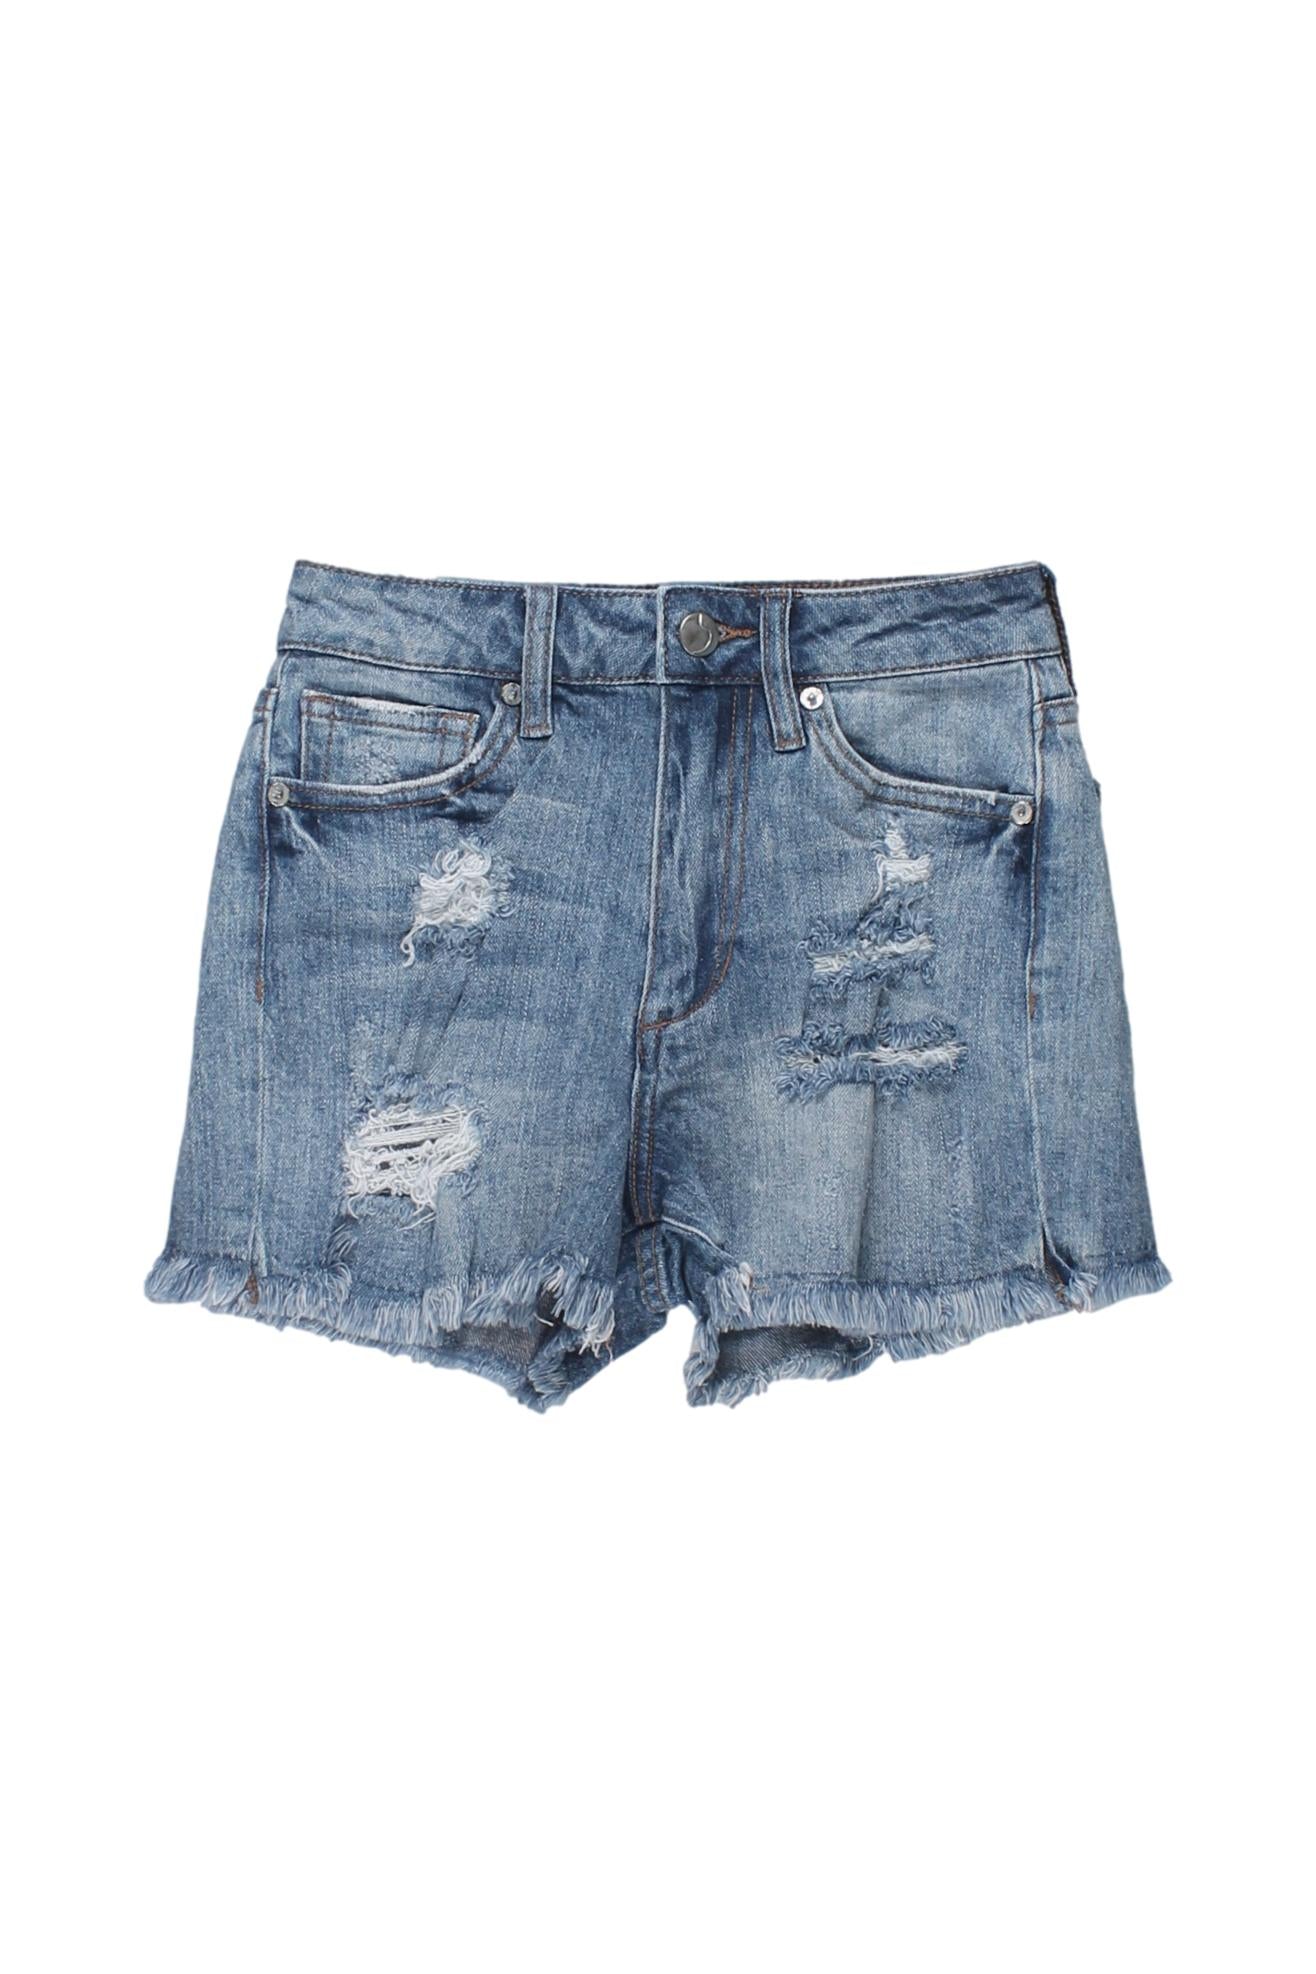 JOE'S - Denim Shorts Color Azul Con Detalles Rotos